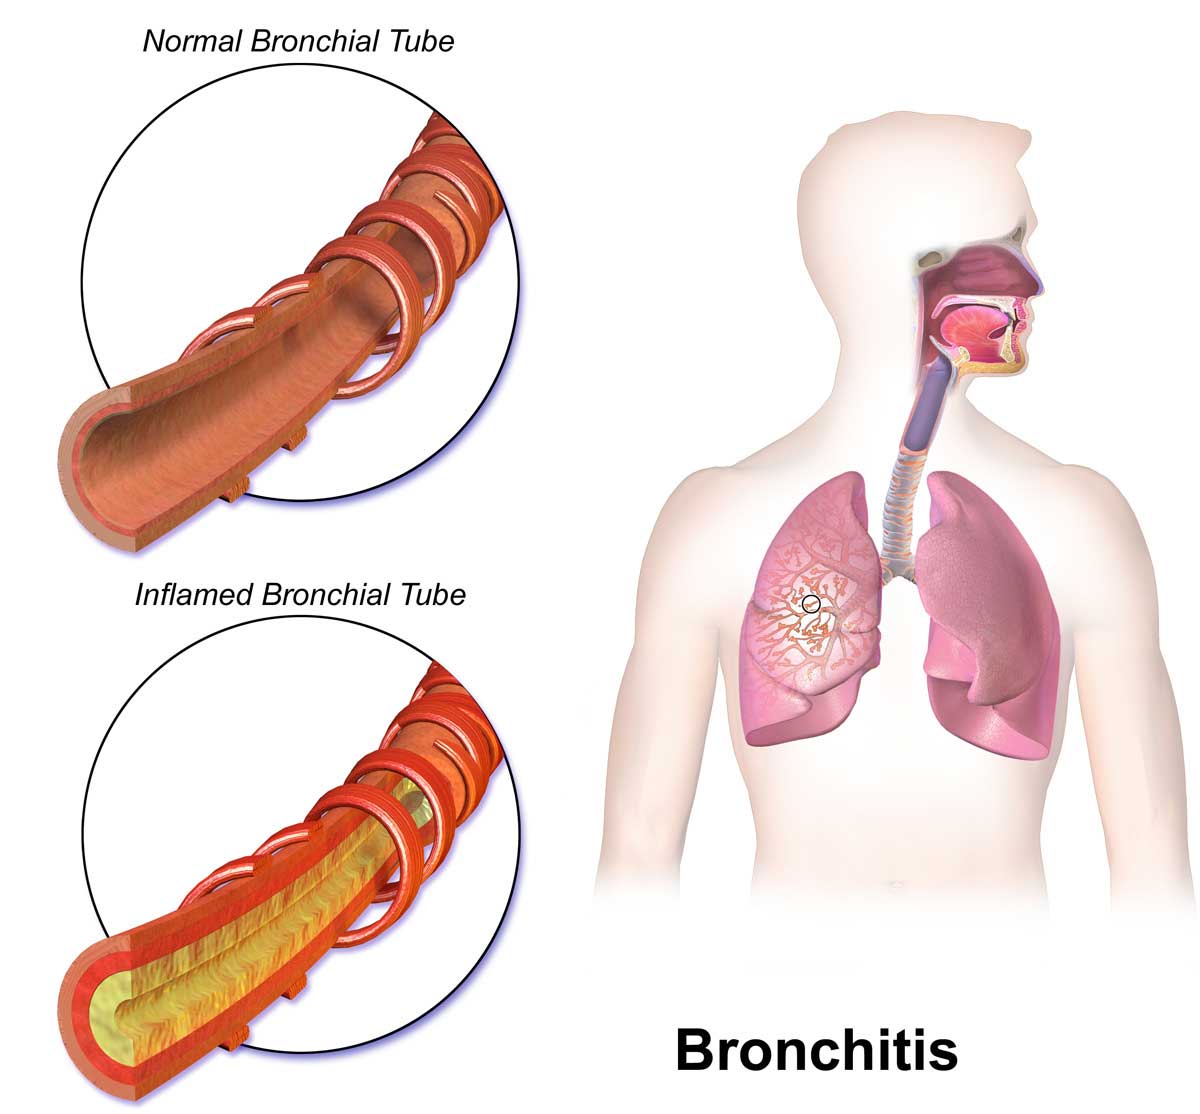 BRONCHITIS SYMPTOMS